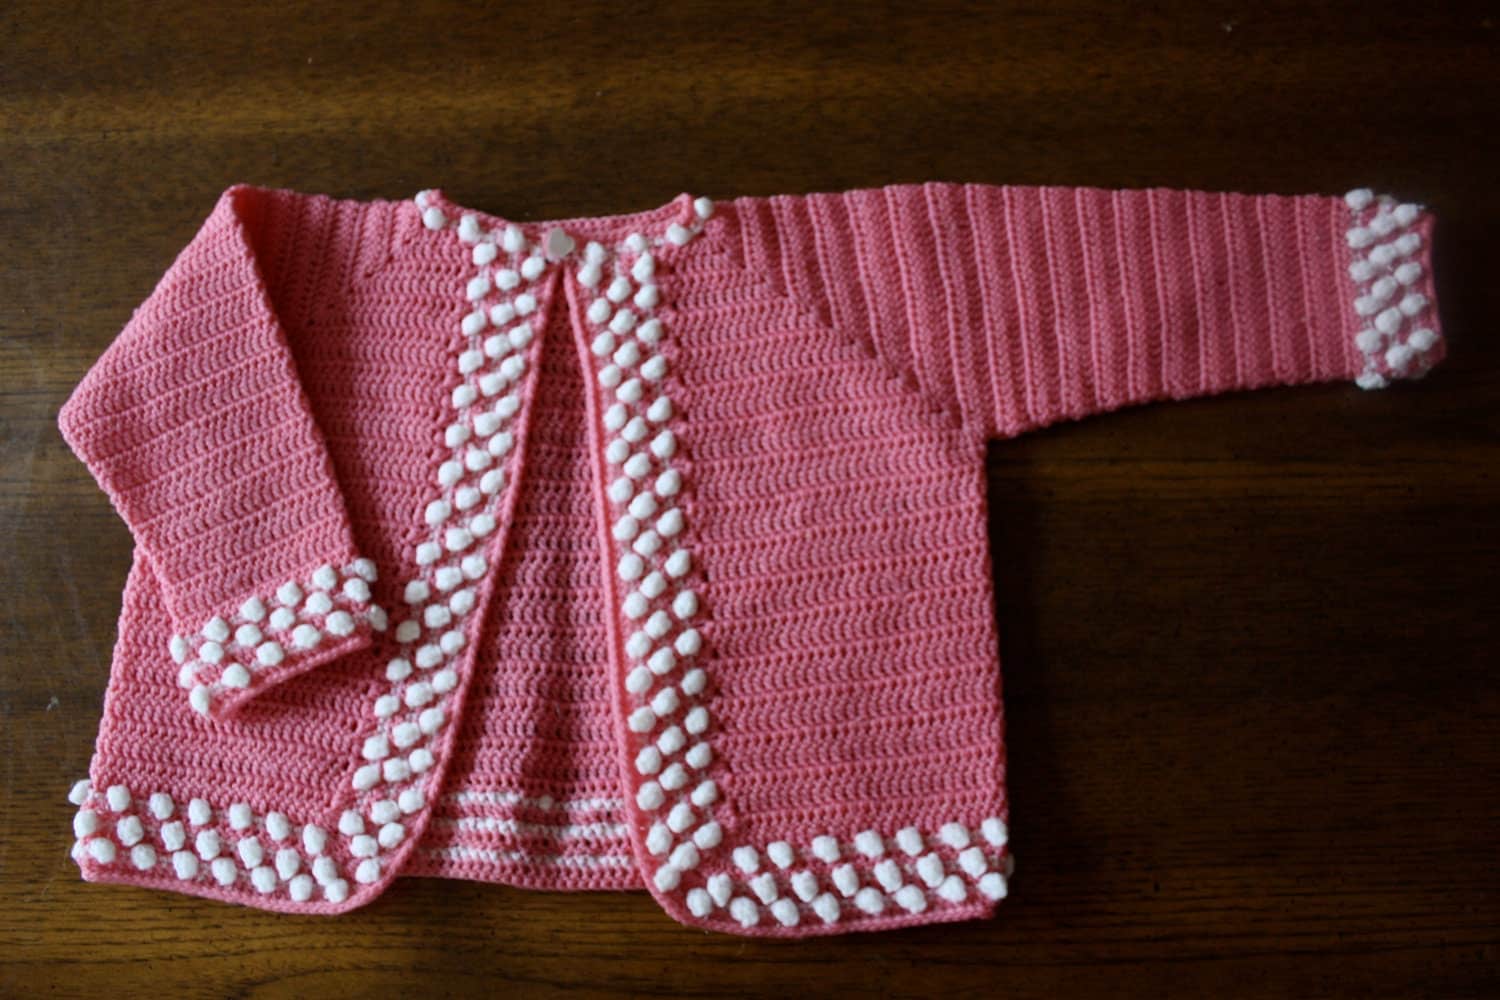 MIL AZAHARES BLANCOS: Vestidos vintage a crochet para niña